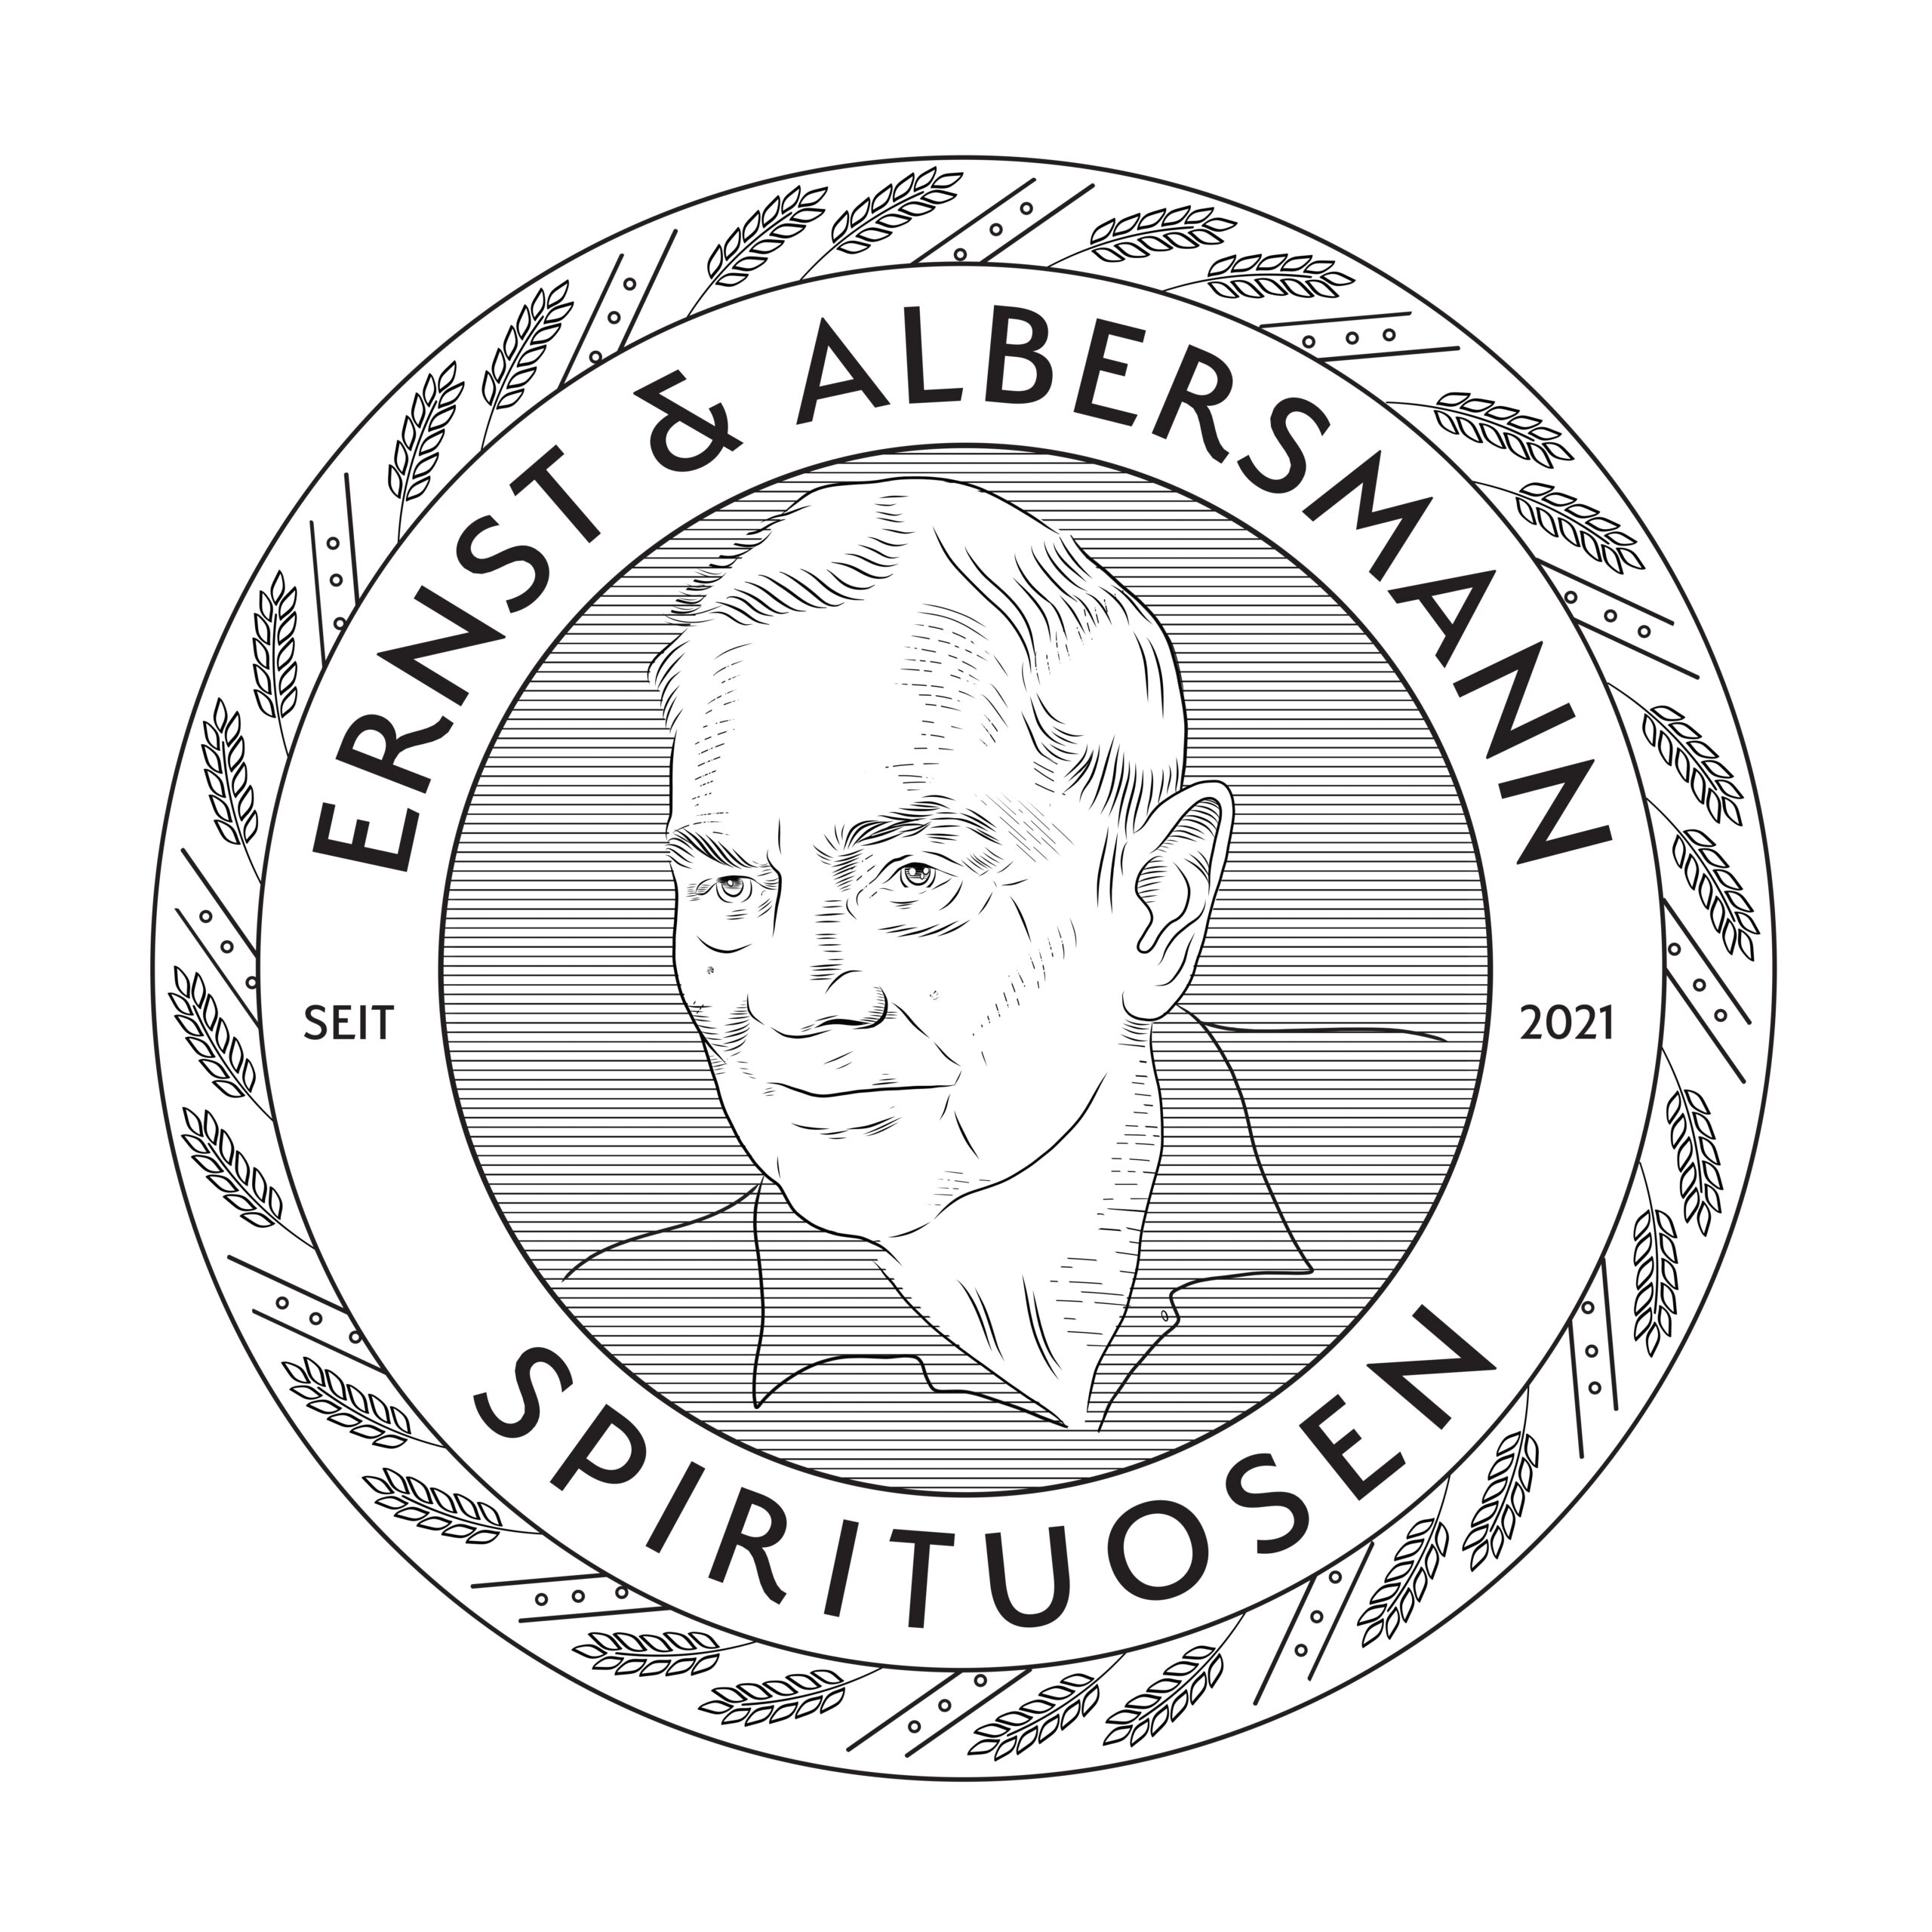 Ernst & Albersmann Spirituosen GmbH